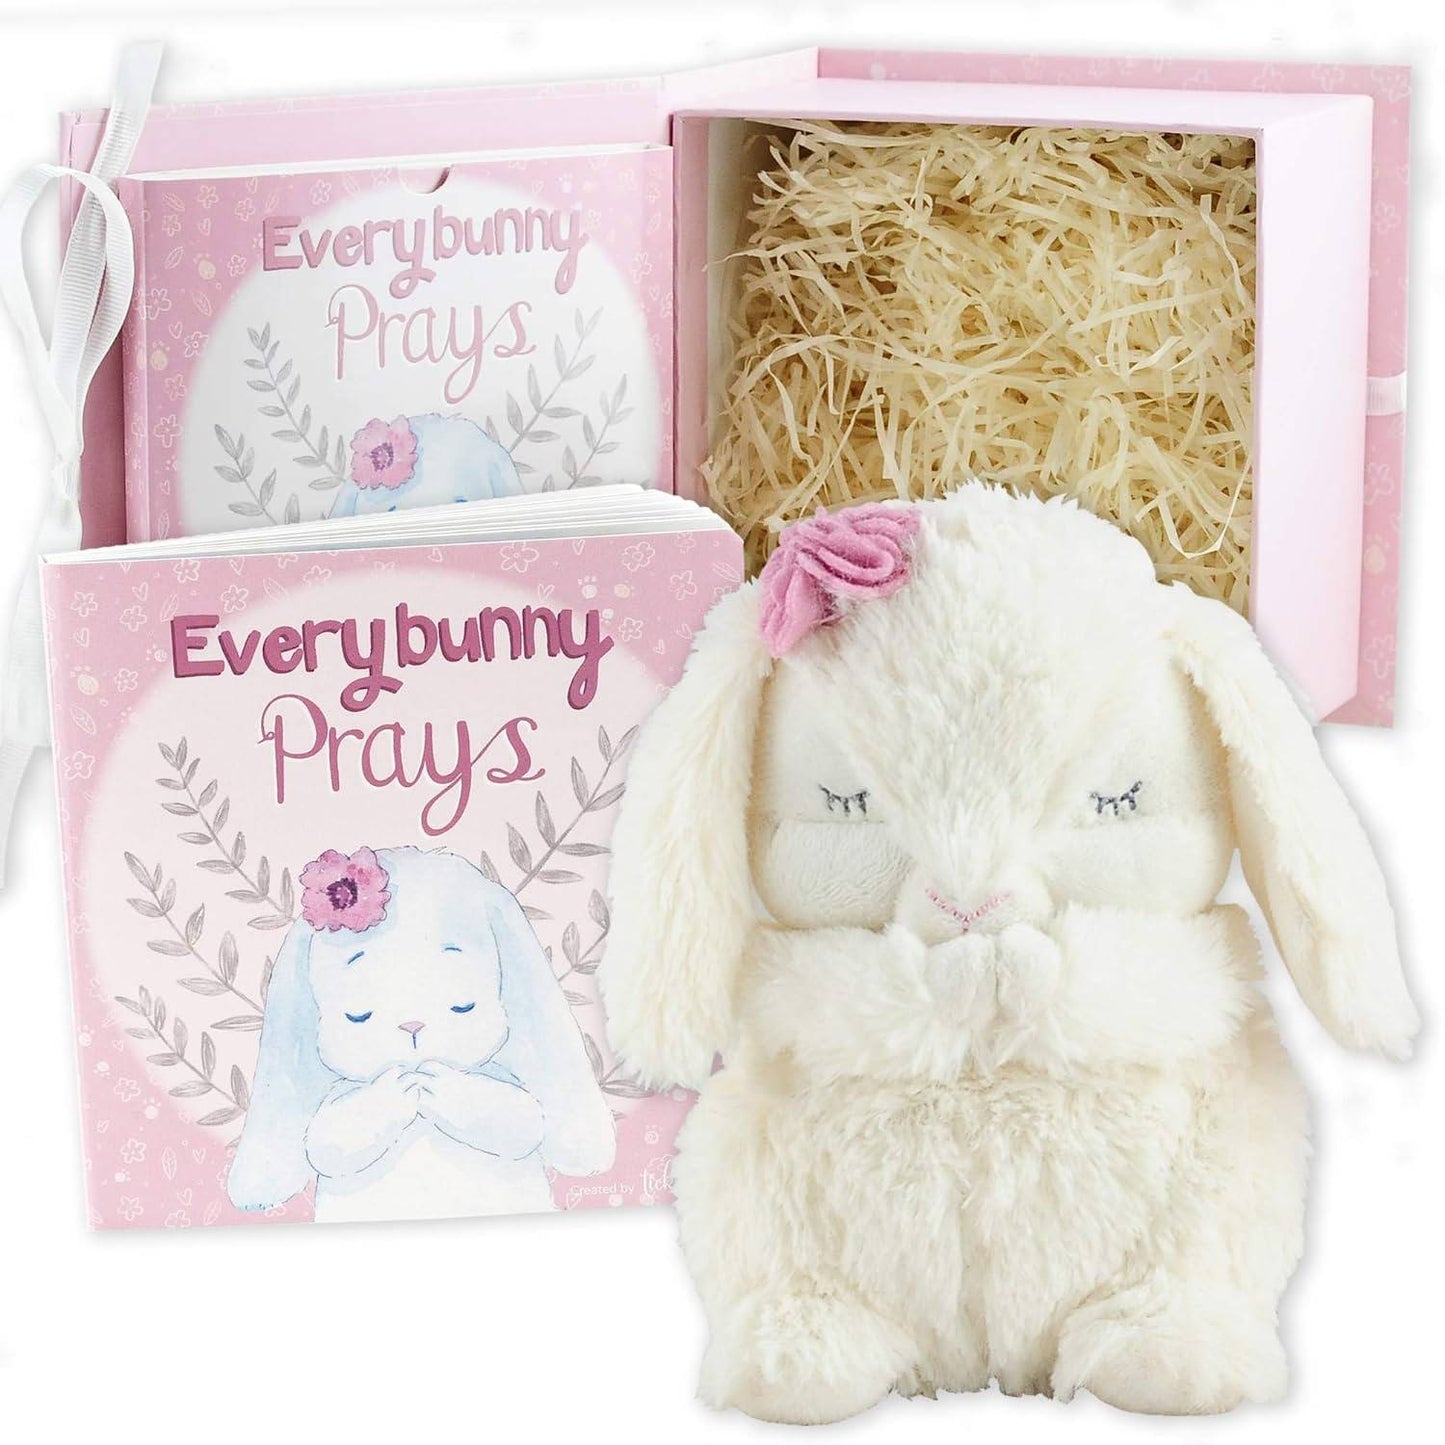 EveryBunny Prays- Gift Set